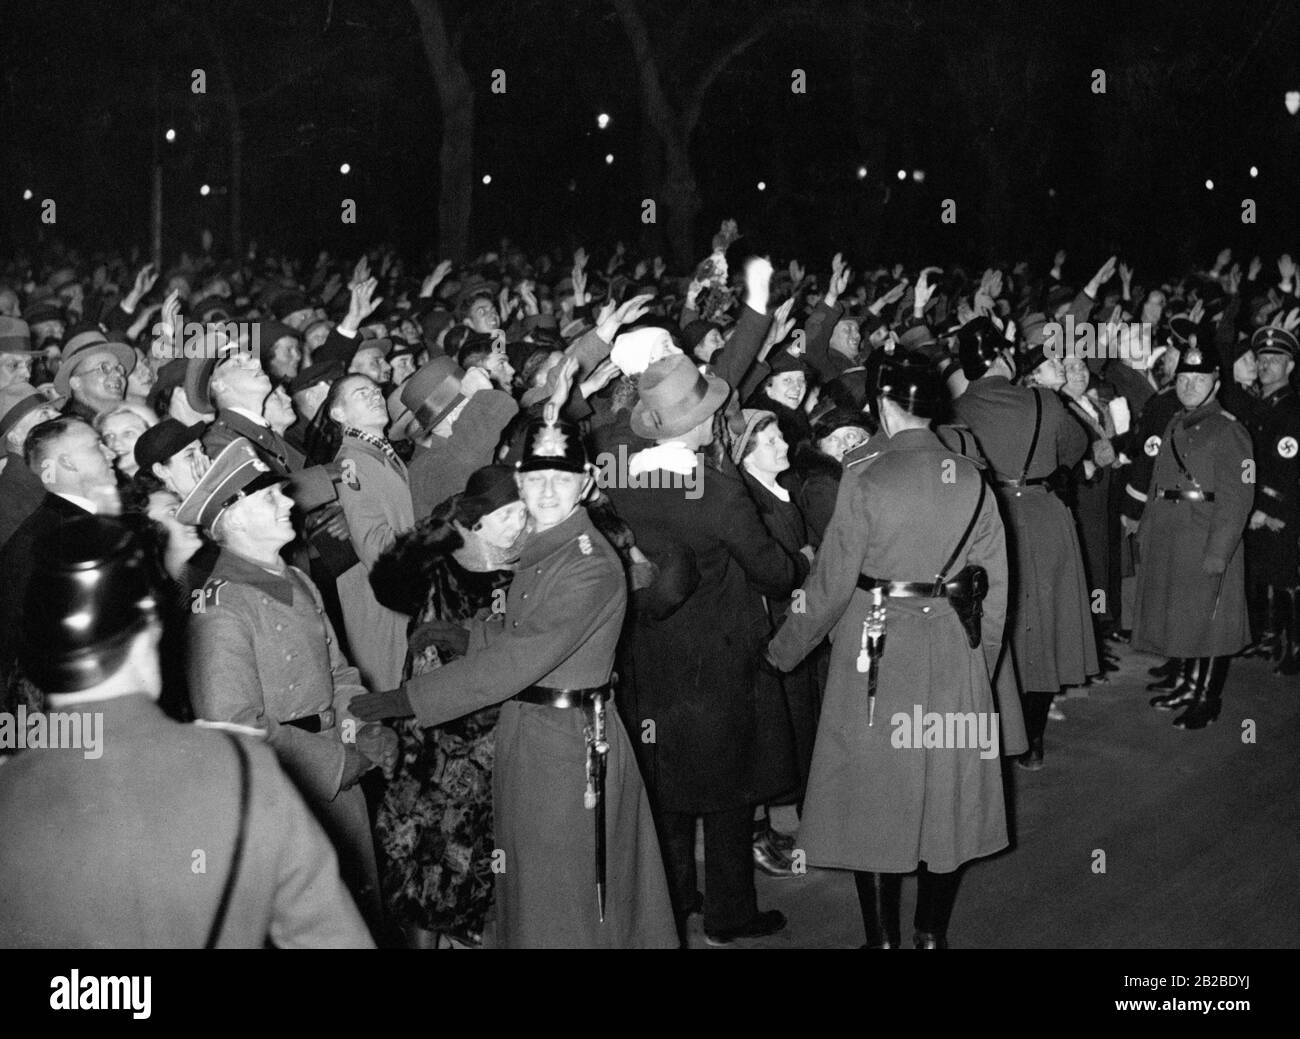 Les supporters accueillent Adolf Hitler à minuit le réveillon du nouvel an. Beaucoup d'entre eux remplissent le salut nazi en son honneur. Les policiers et les représentants de la Schutzstalof SS assurent l'ordre. Banque D'Images